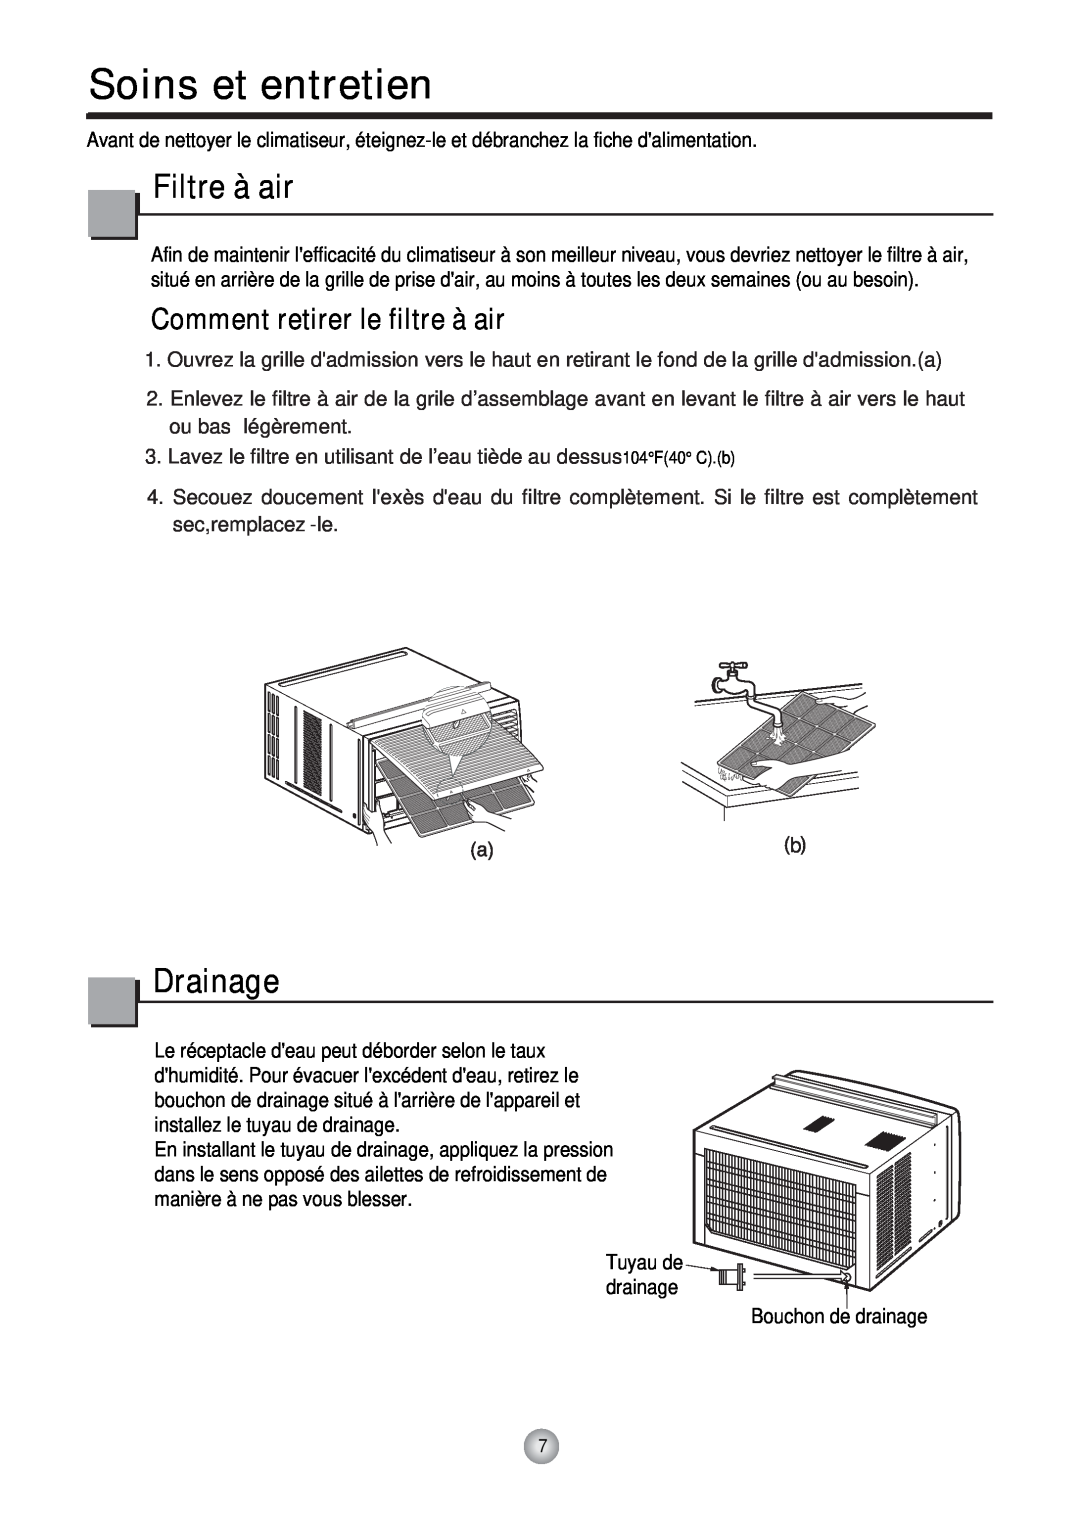 Friedrich CP12, CP10 manual Soins et entretien, Filtre à air, Comment retirer le filtre à air, Drainage 